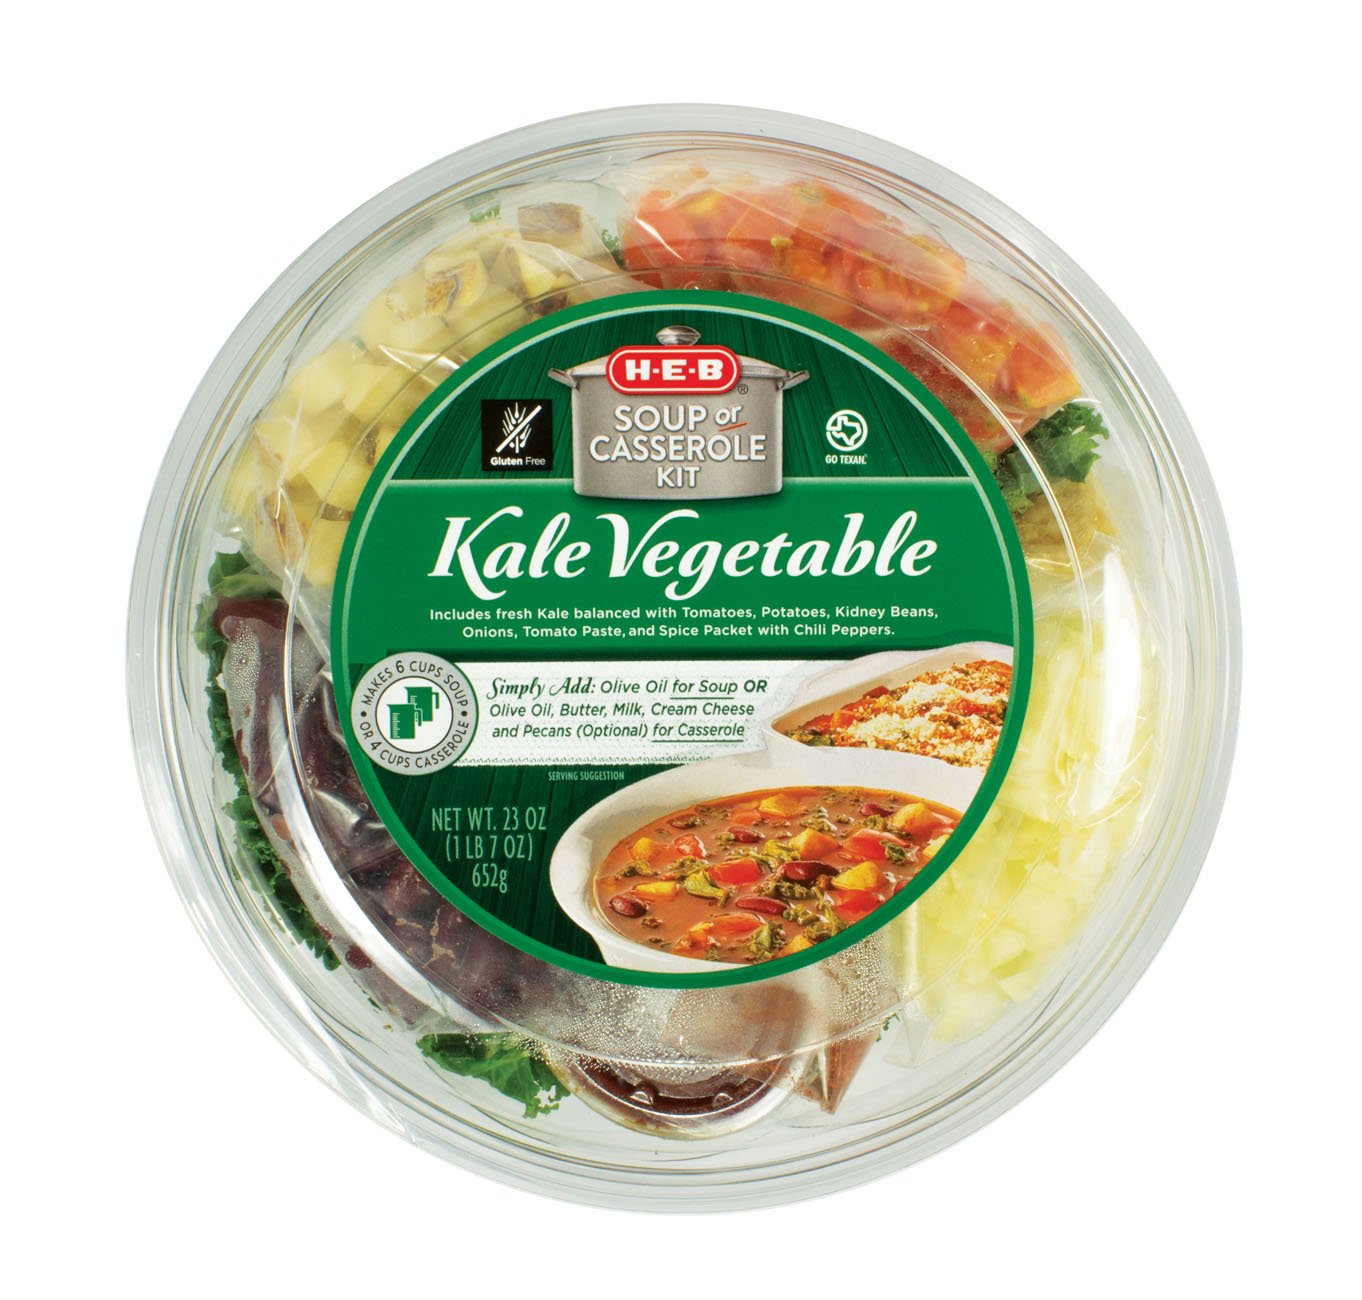 Fresh Express Gourmet Kits Salad Bowls